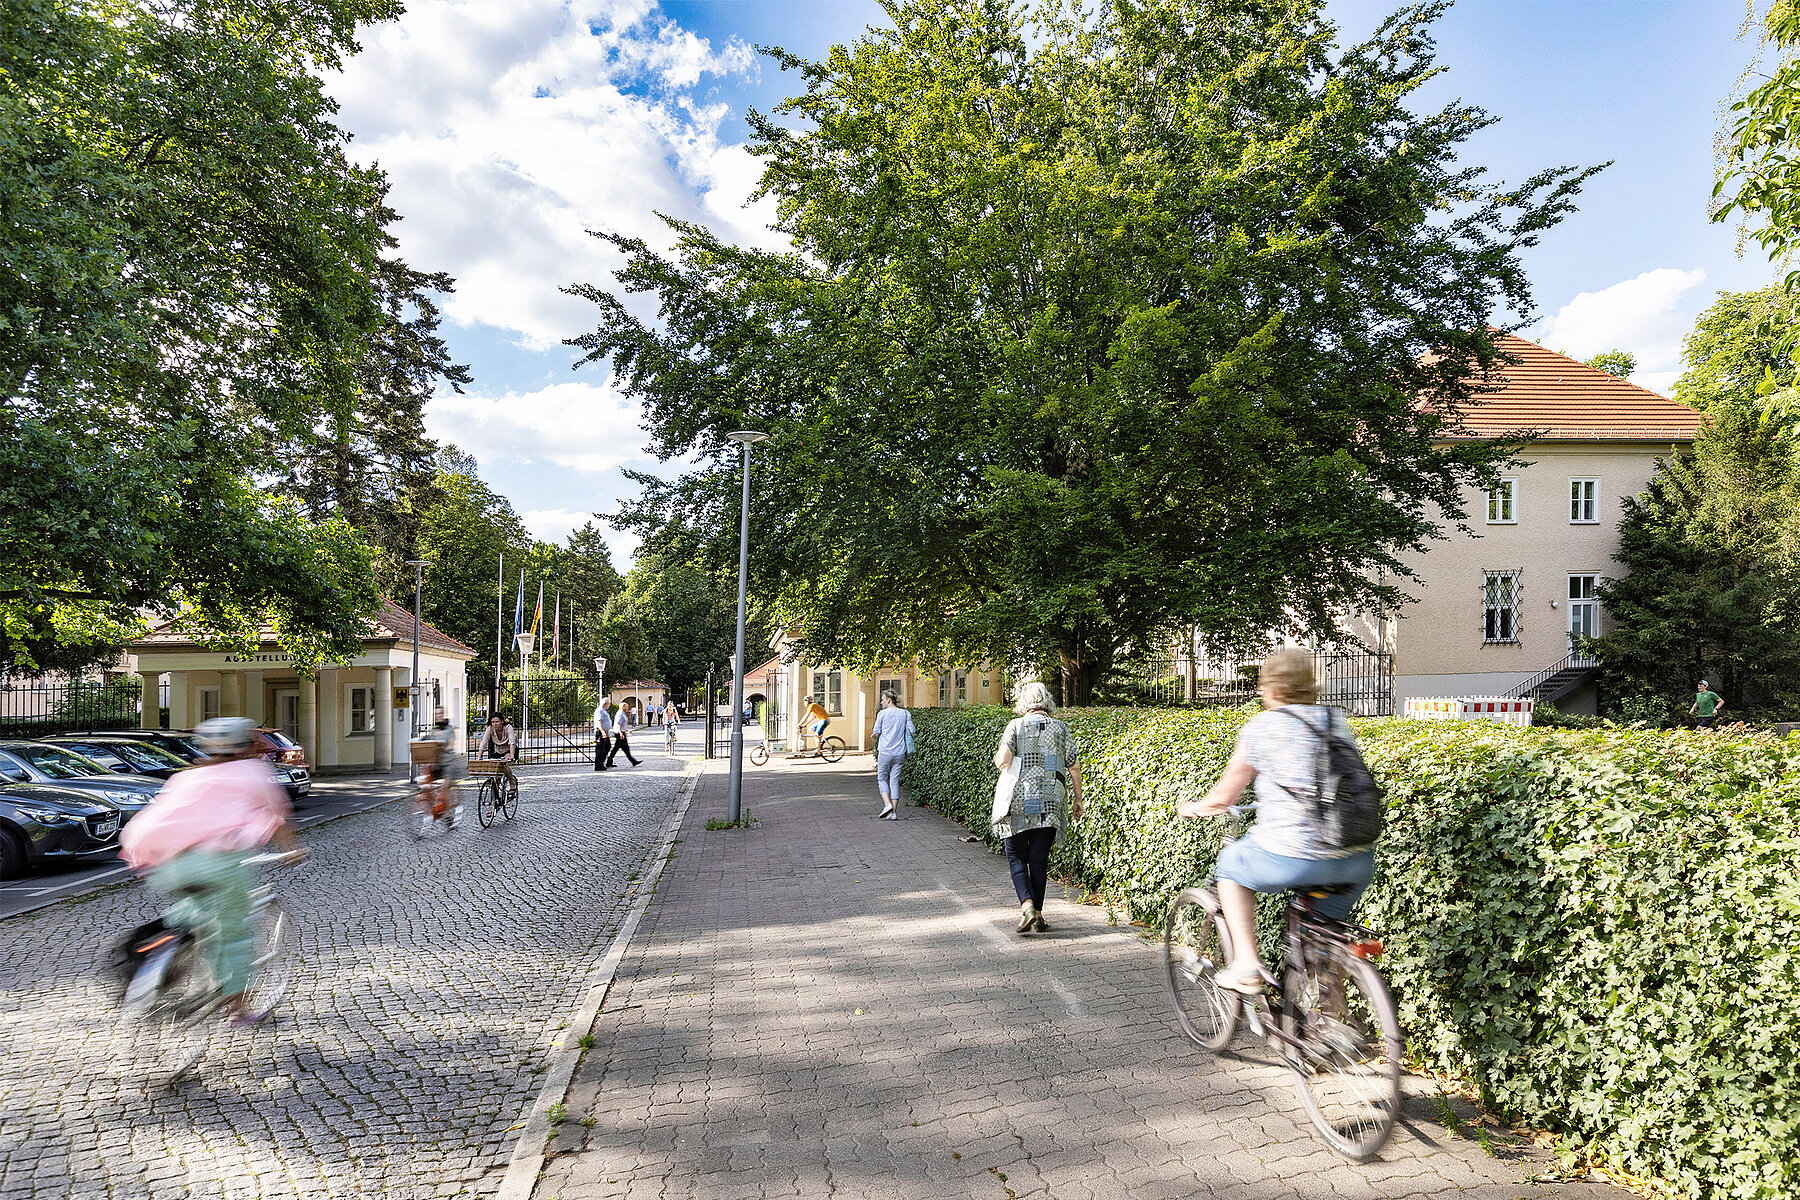 Straße, die auf den Eingang zum Schlosspark zuläuft. Passierende sind zu Fuß und auf dem Fahrrad unterwegs.